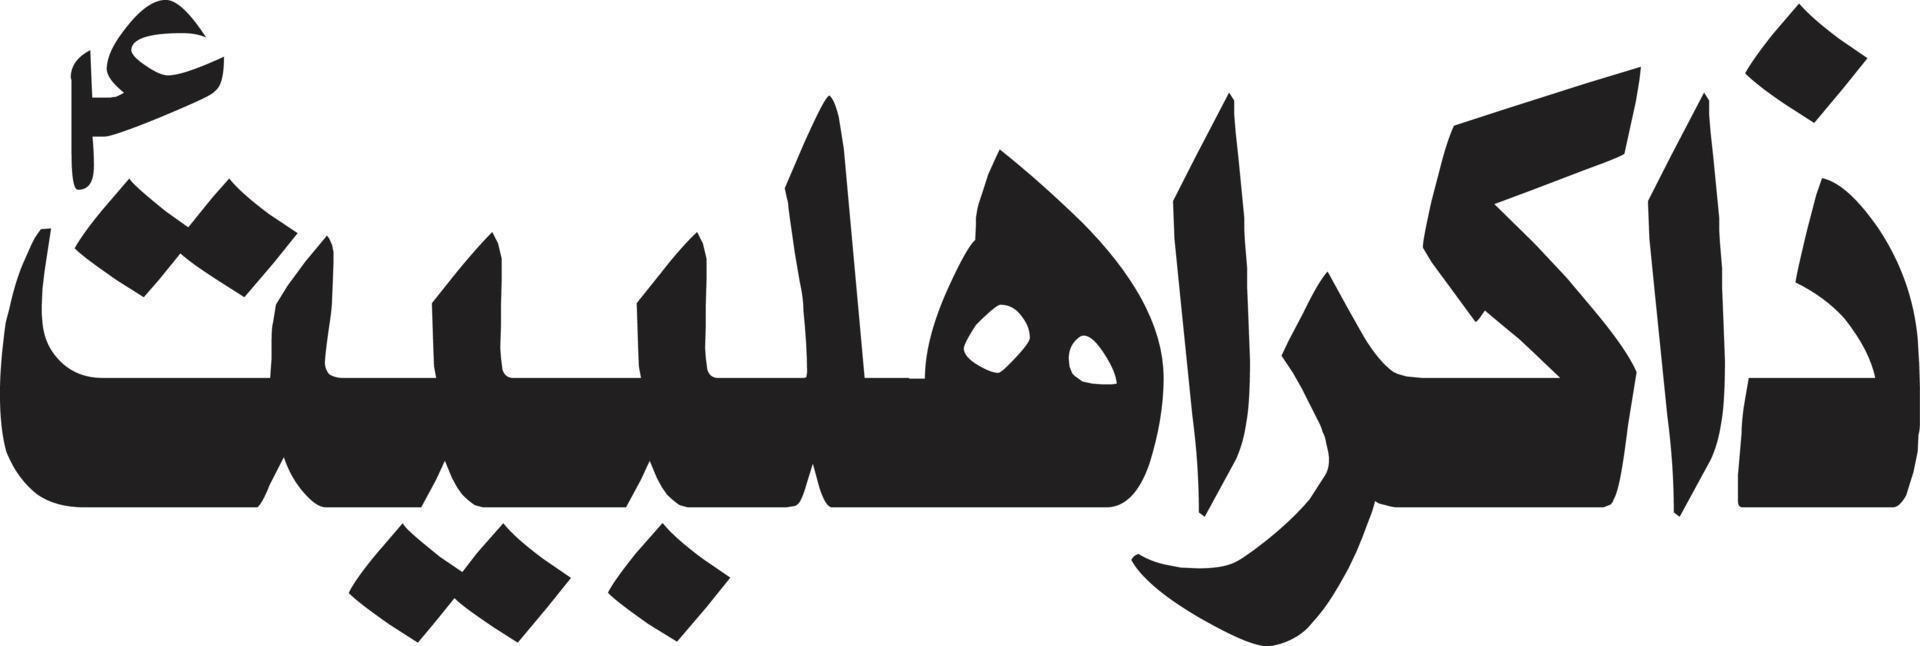 zakir ahlbat título caligrafía árabe islámica vector libre